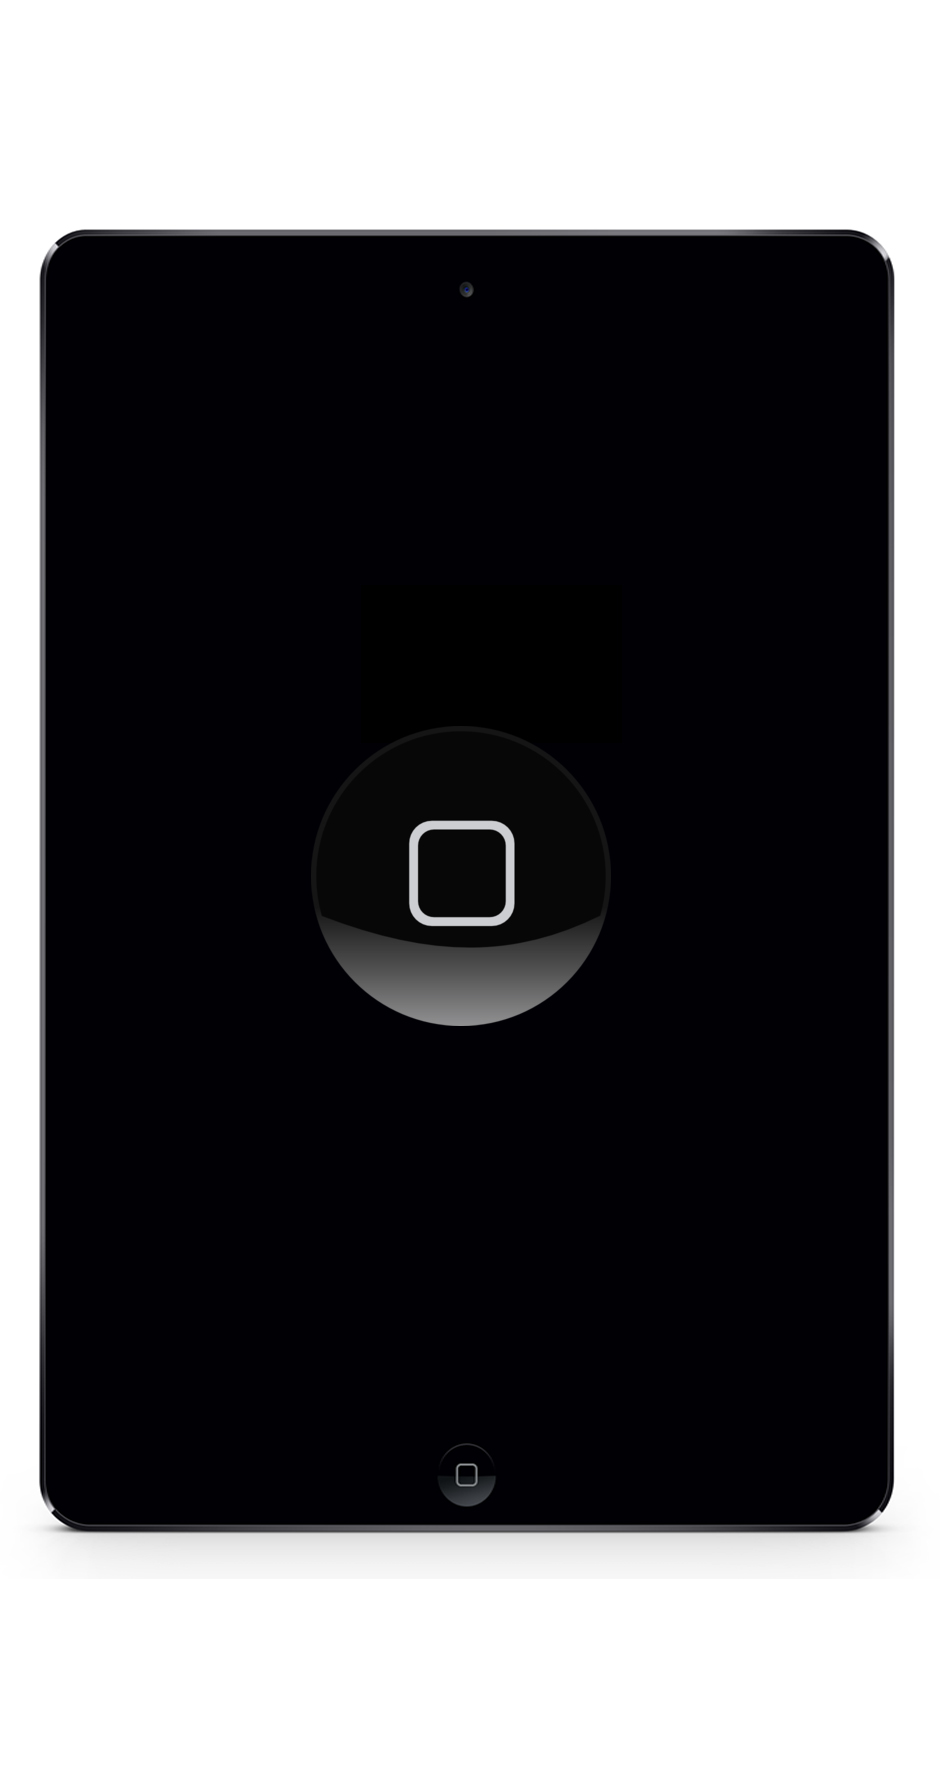 iPad Mini 3 Reparatur Berlin Home-button